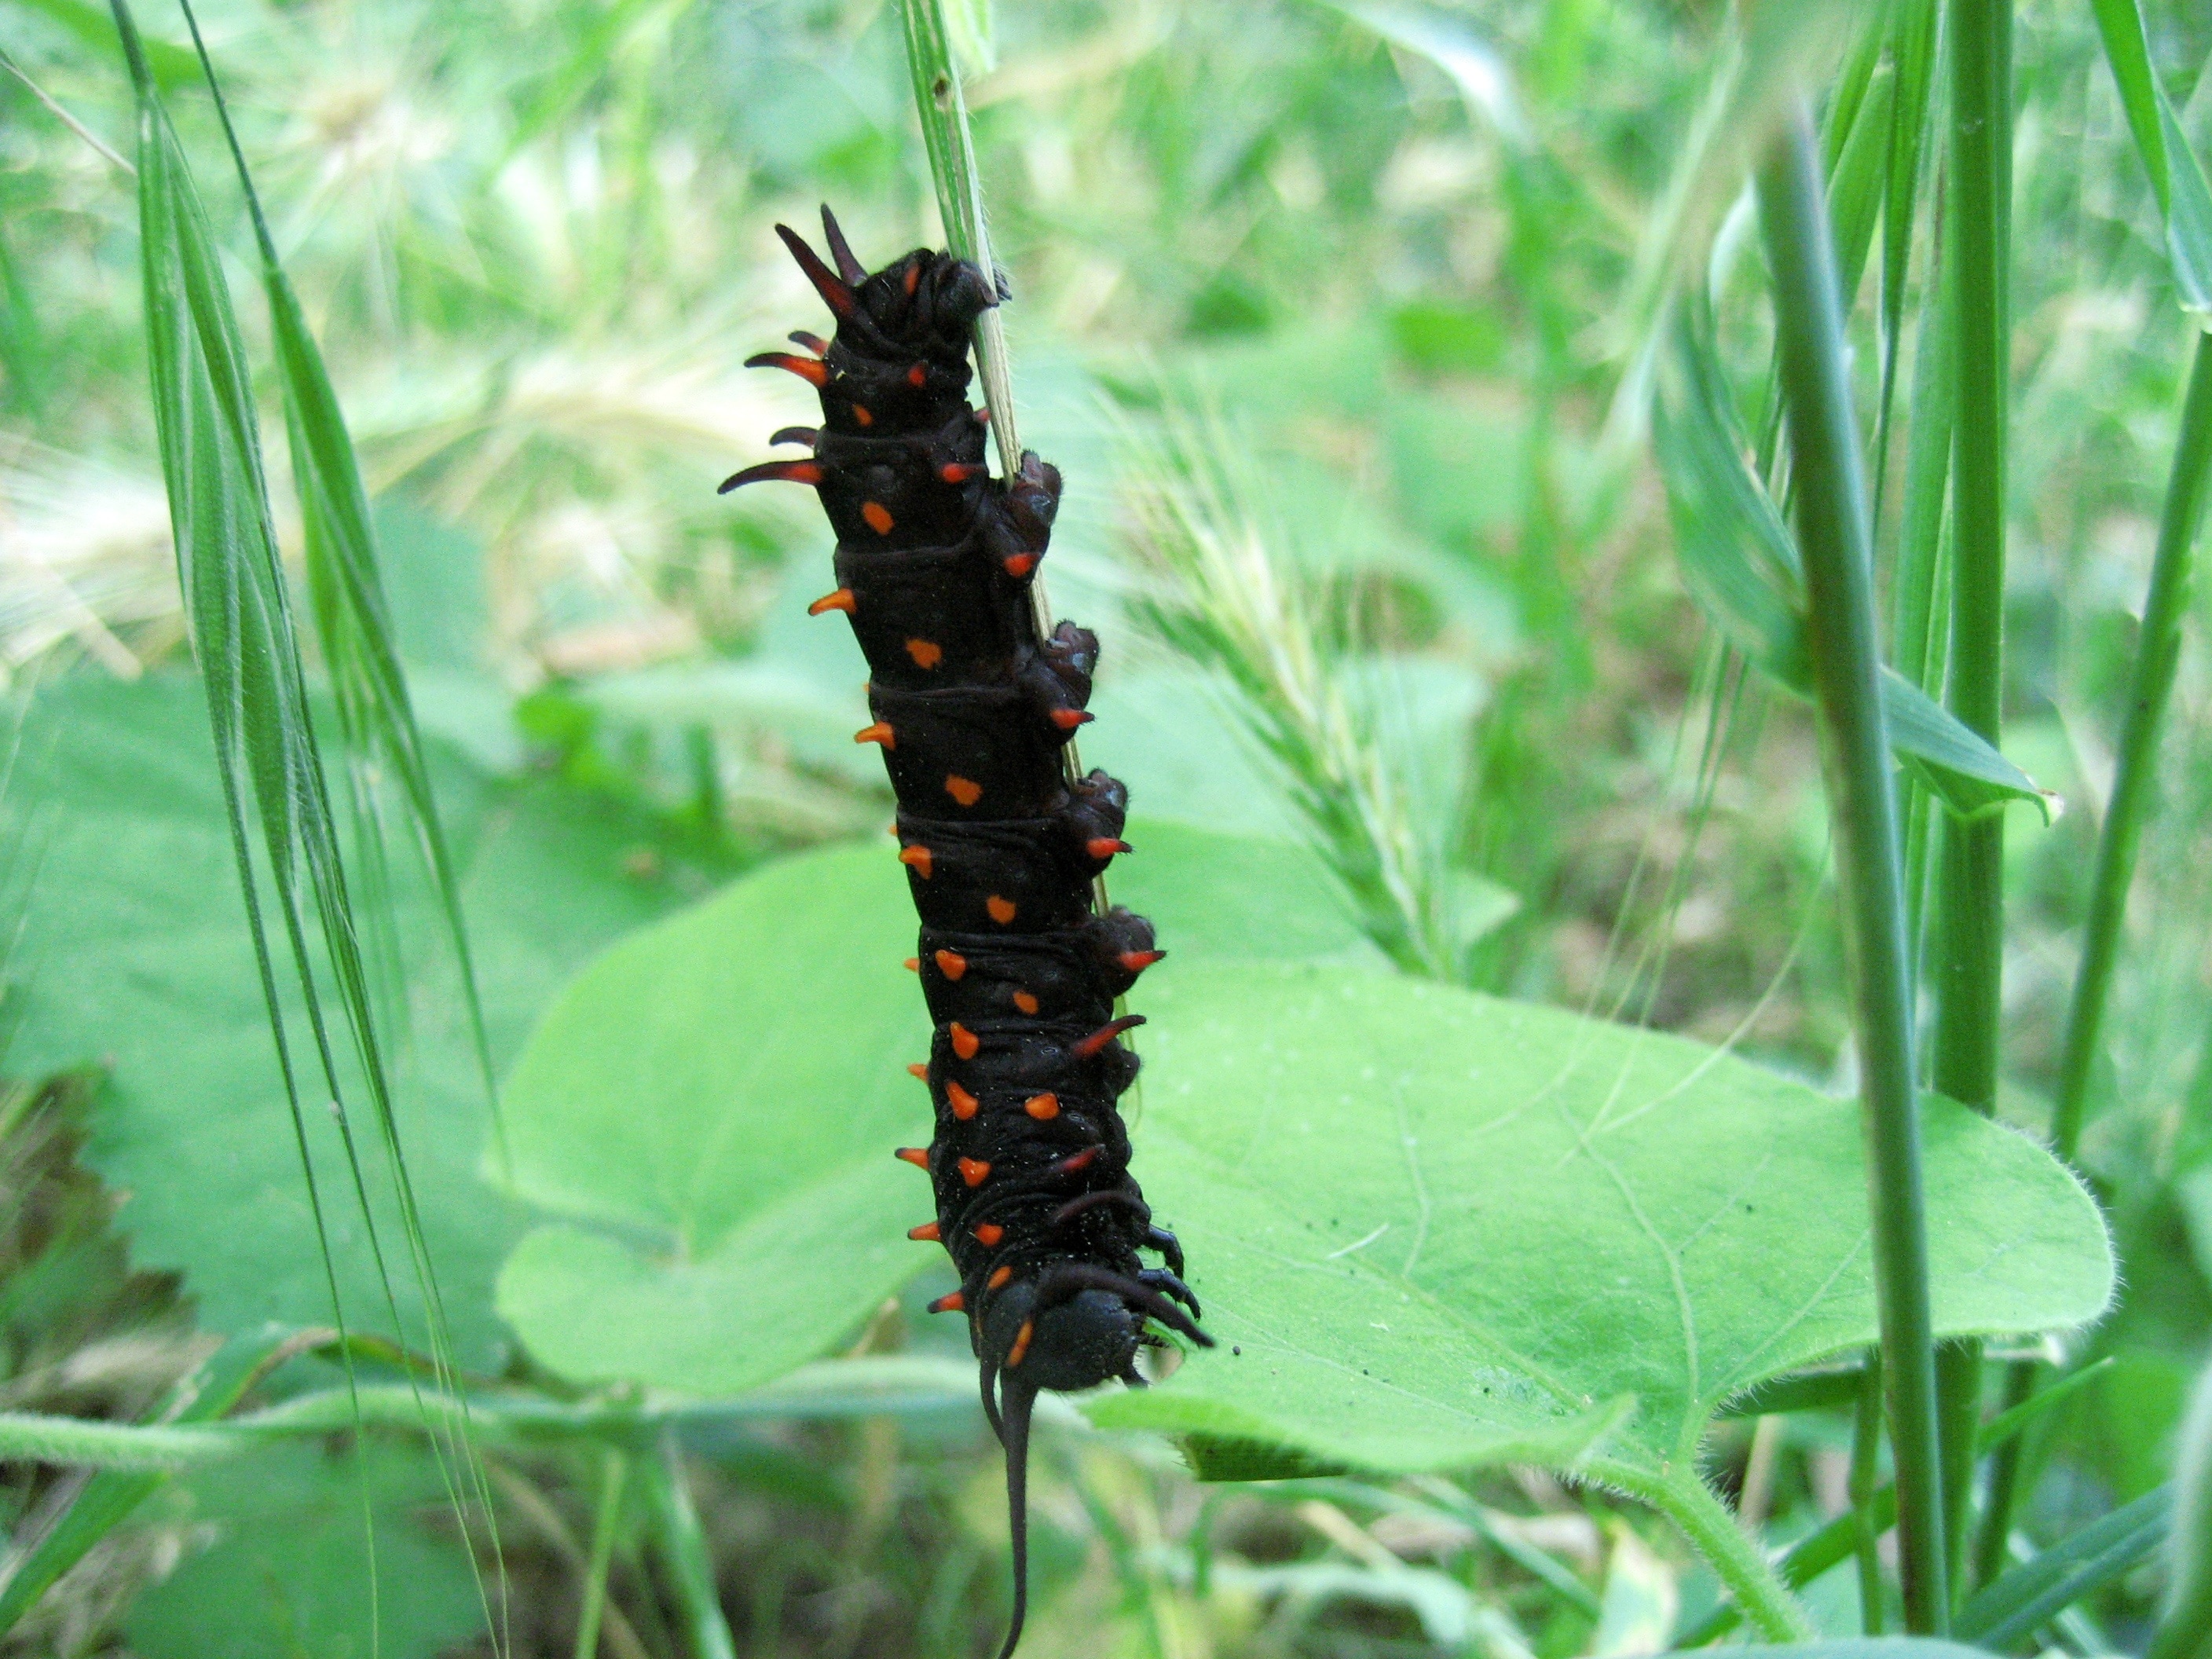 Caterpillar, Tiger Swallowtail, Closeup, insect, nature